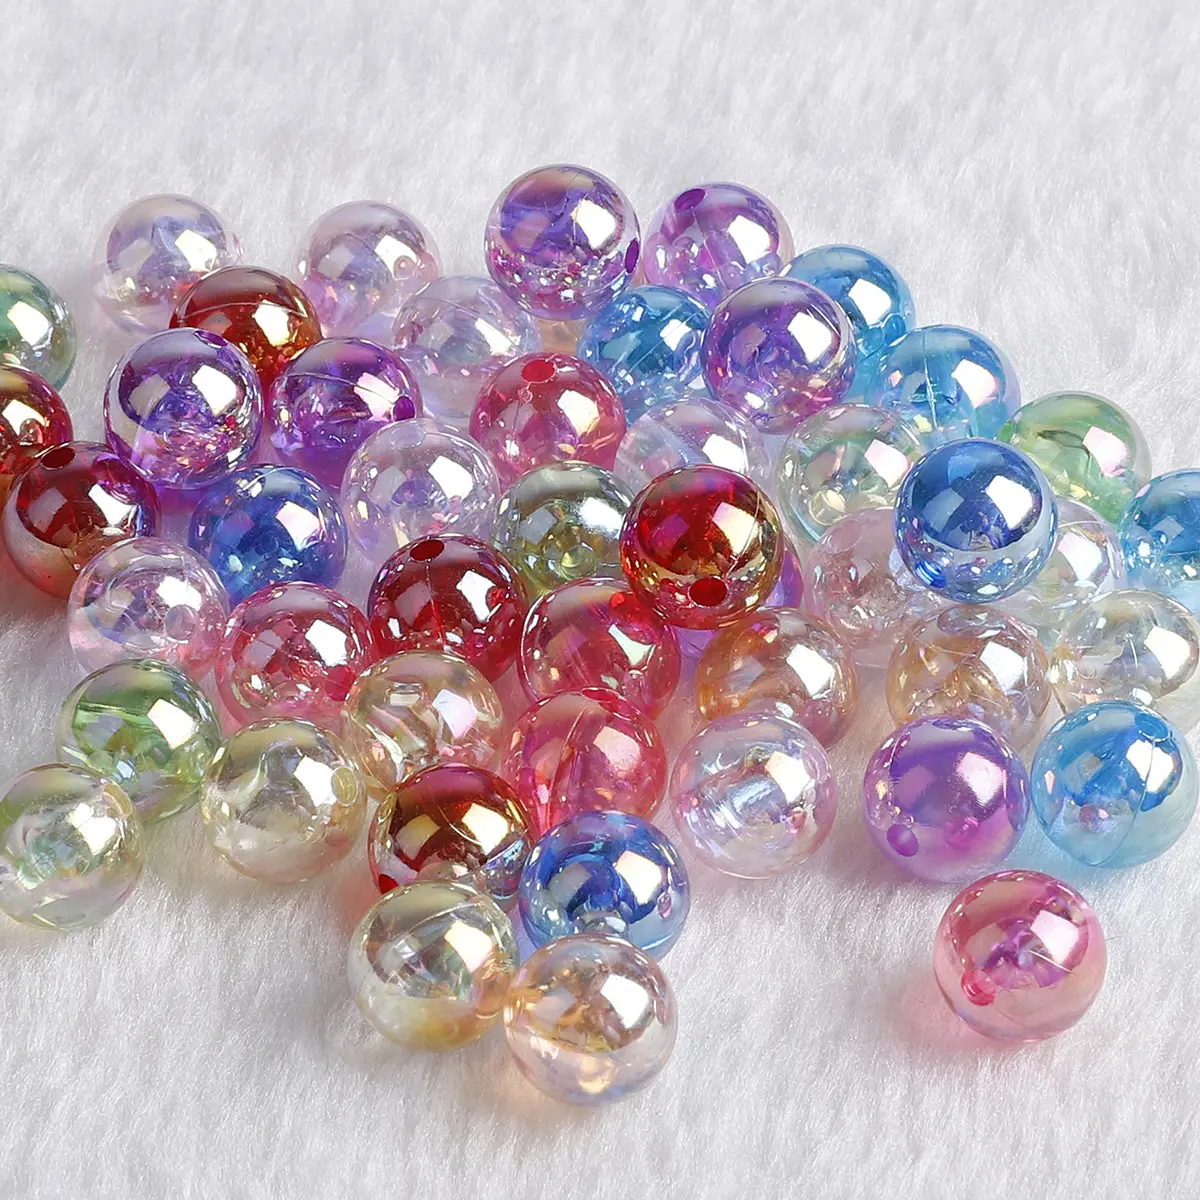 Grande couleur arc-en-ciel personnalisée acrylique plastique Transparent pendentif perles charme Bracelet collier pour bricolage fabrication de bijoux collier